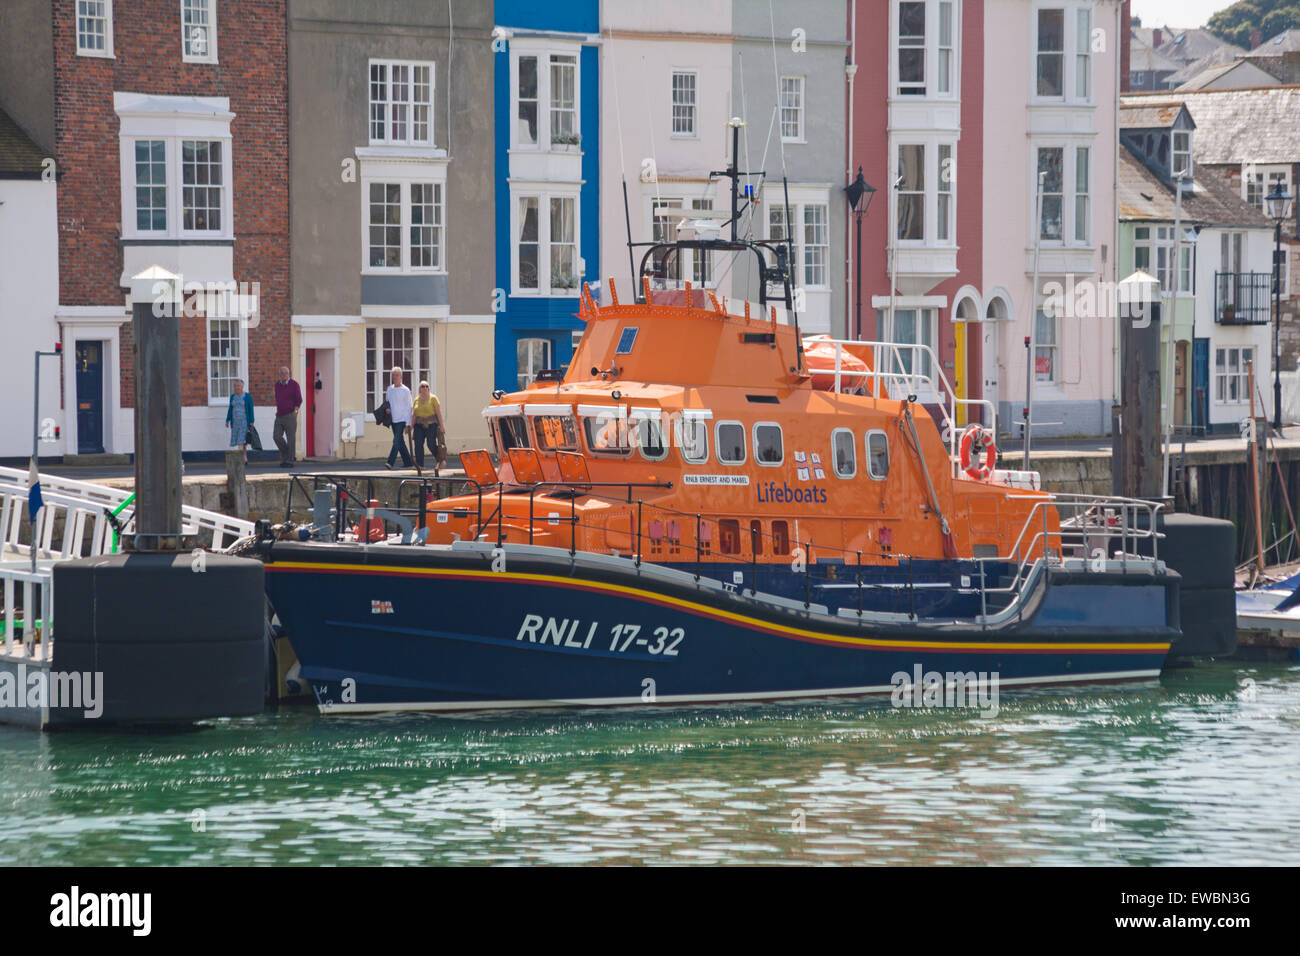 RNLB Ernest und Mabel Rettungsboot RNLI 17-32 SAR Such- und Rettungsschiff, das im Juni in Weymouth, Dorset, Großbritannien, vor Anker liegt Stockfoto